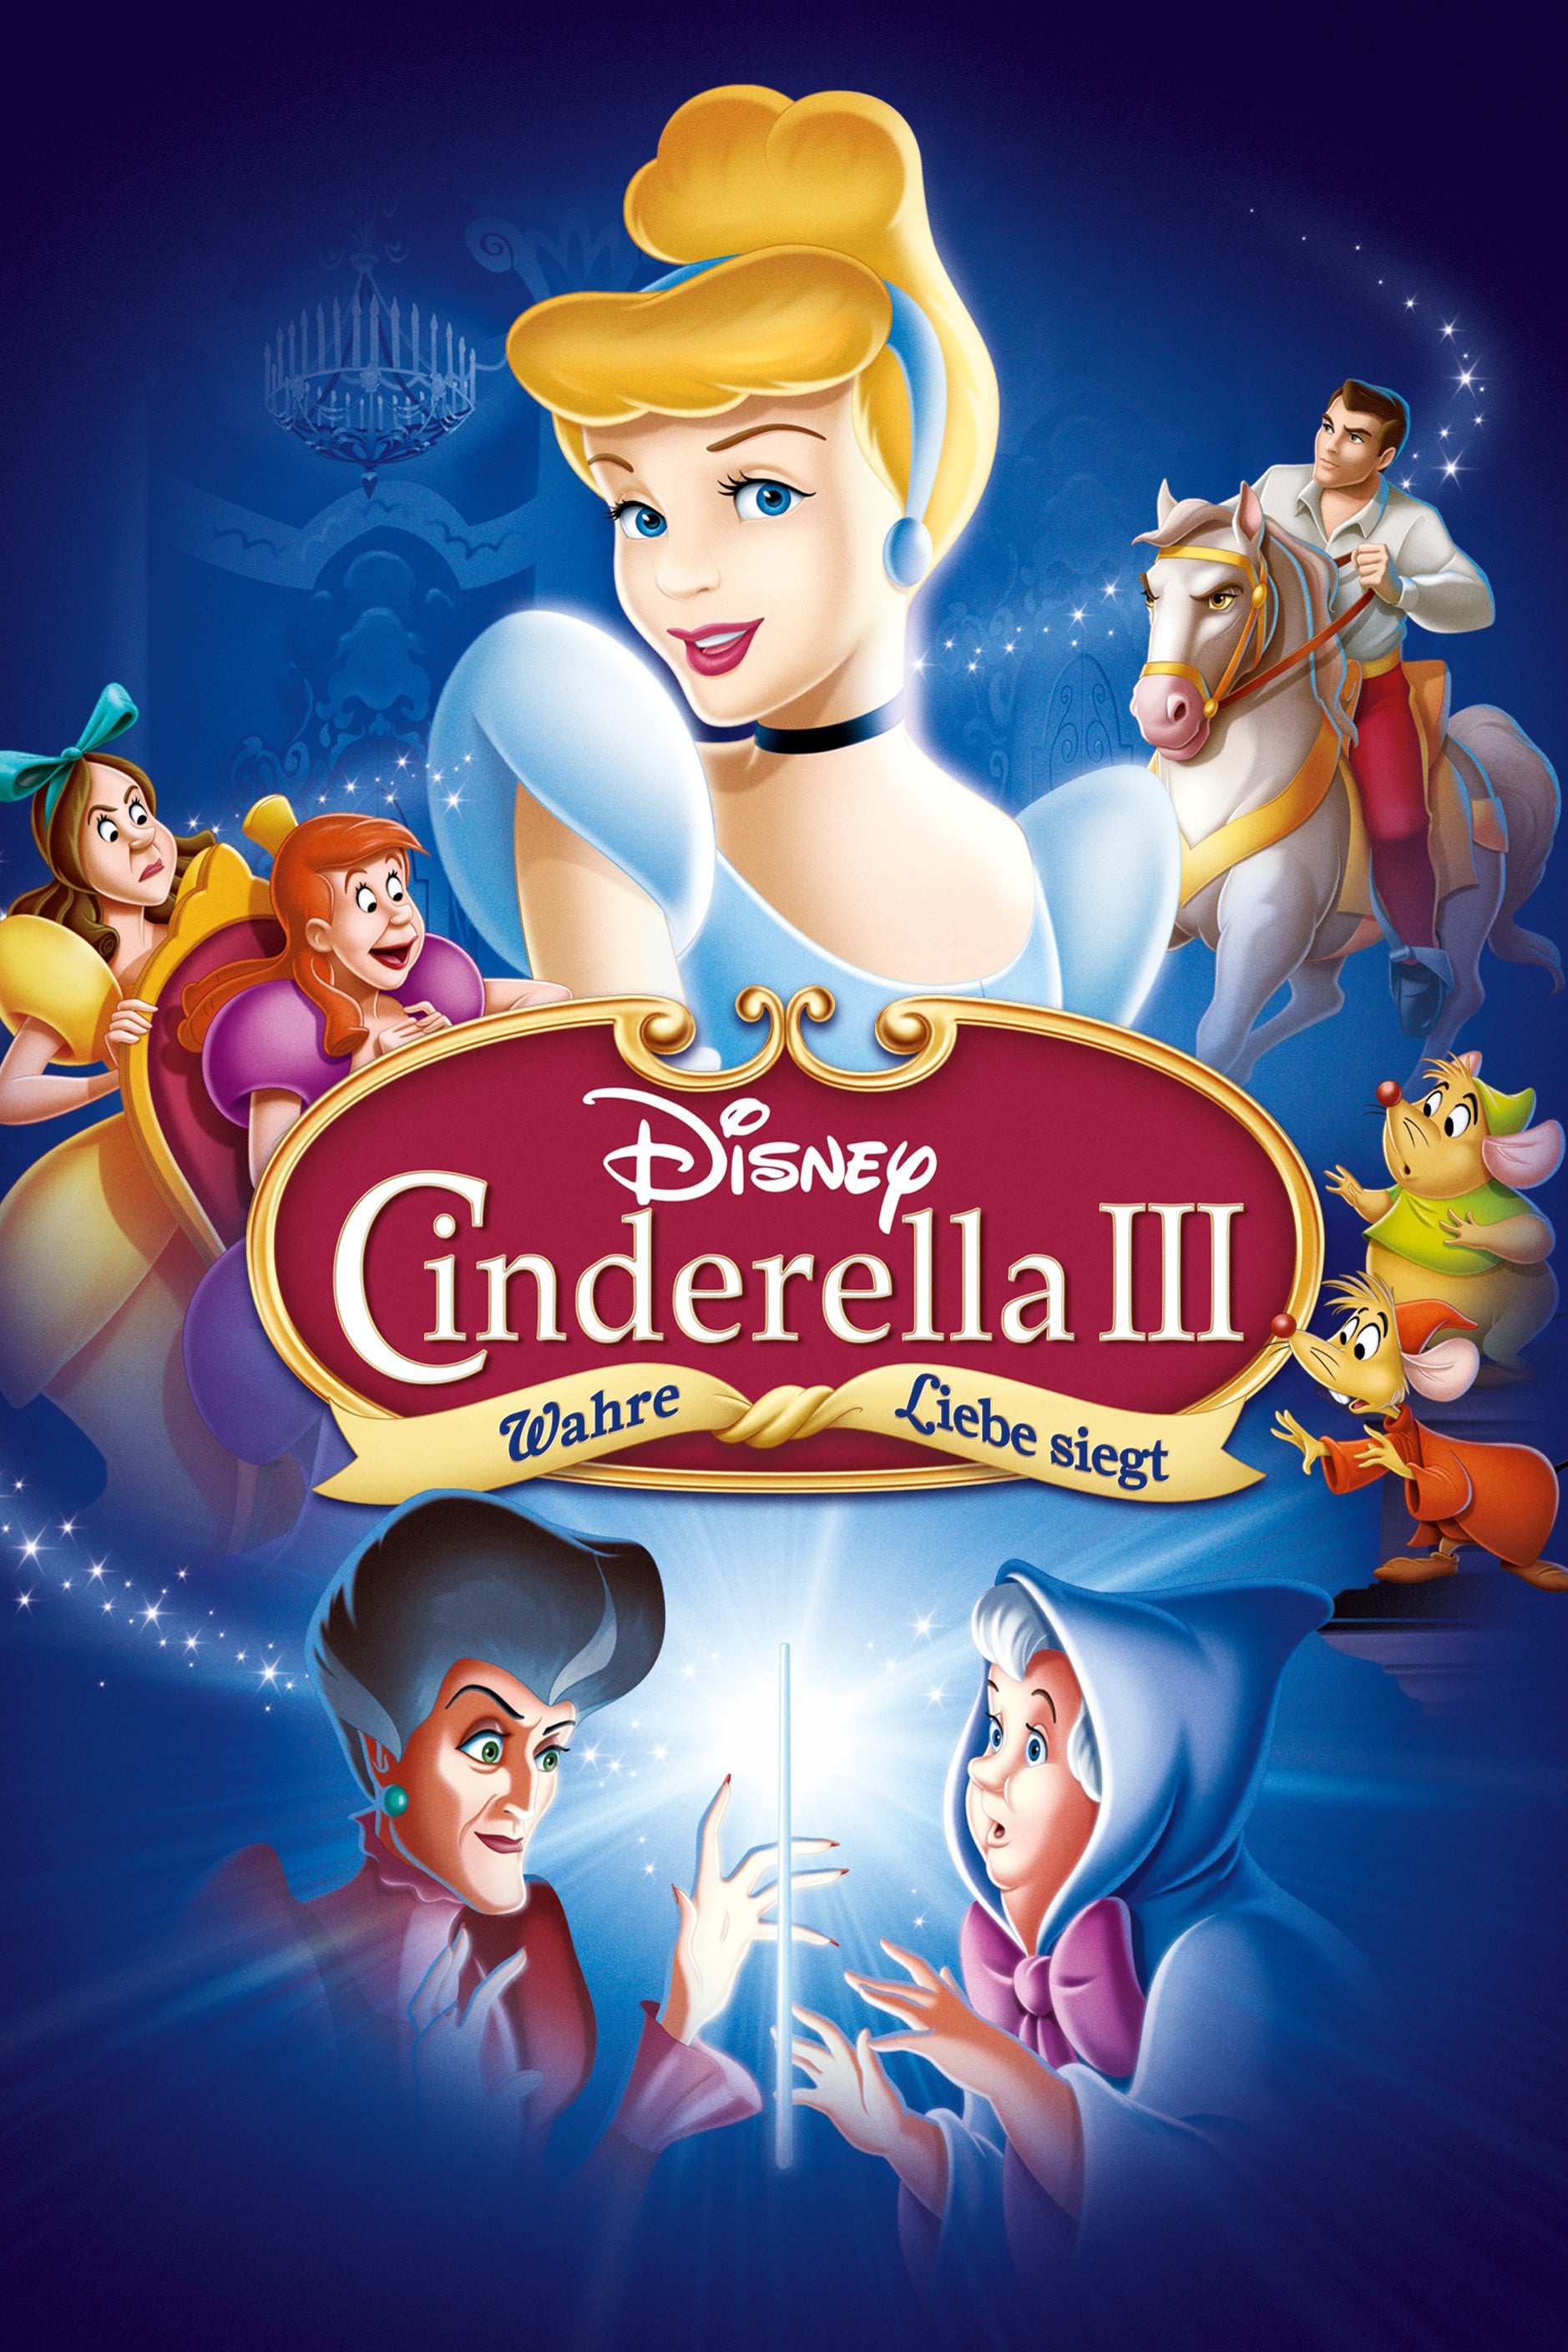 Plakat von "Cinderella - Wahre Liebe siegt"